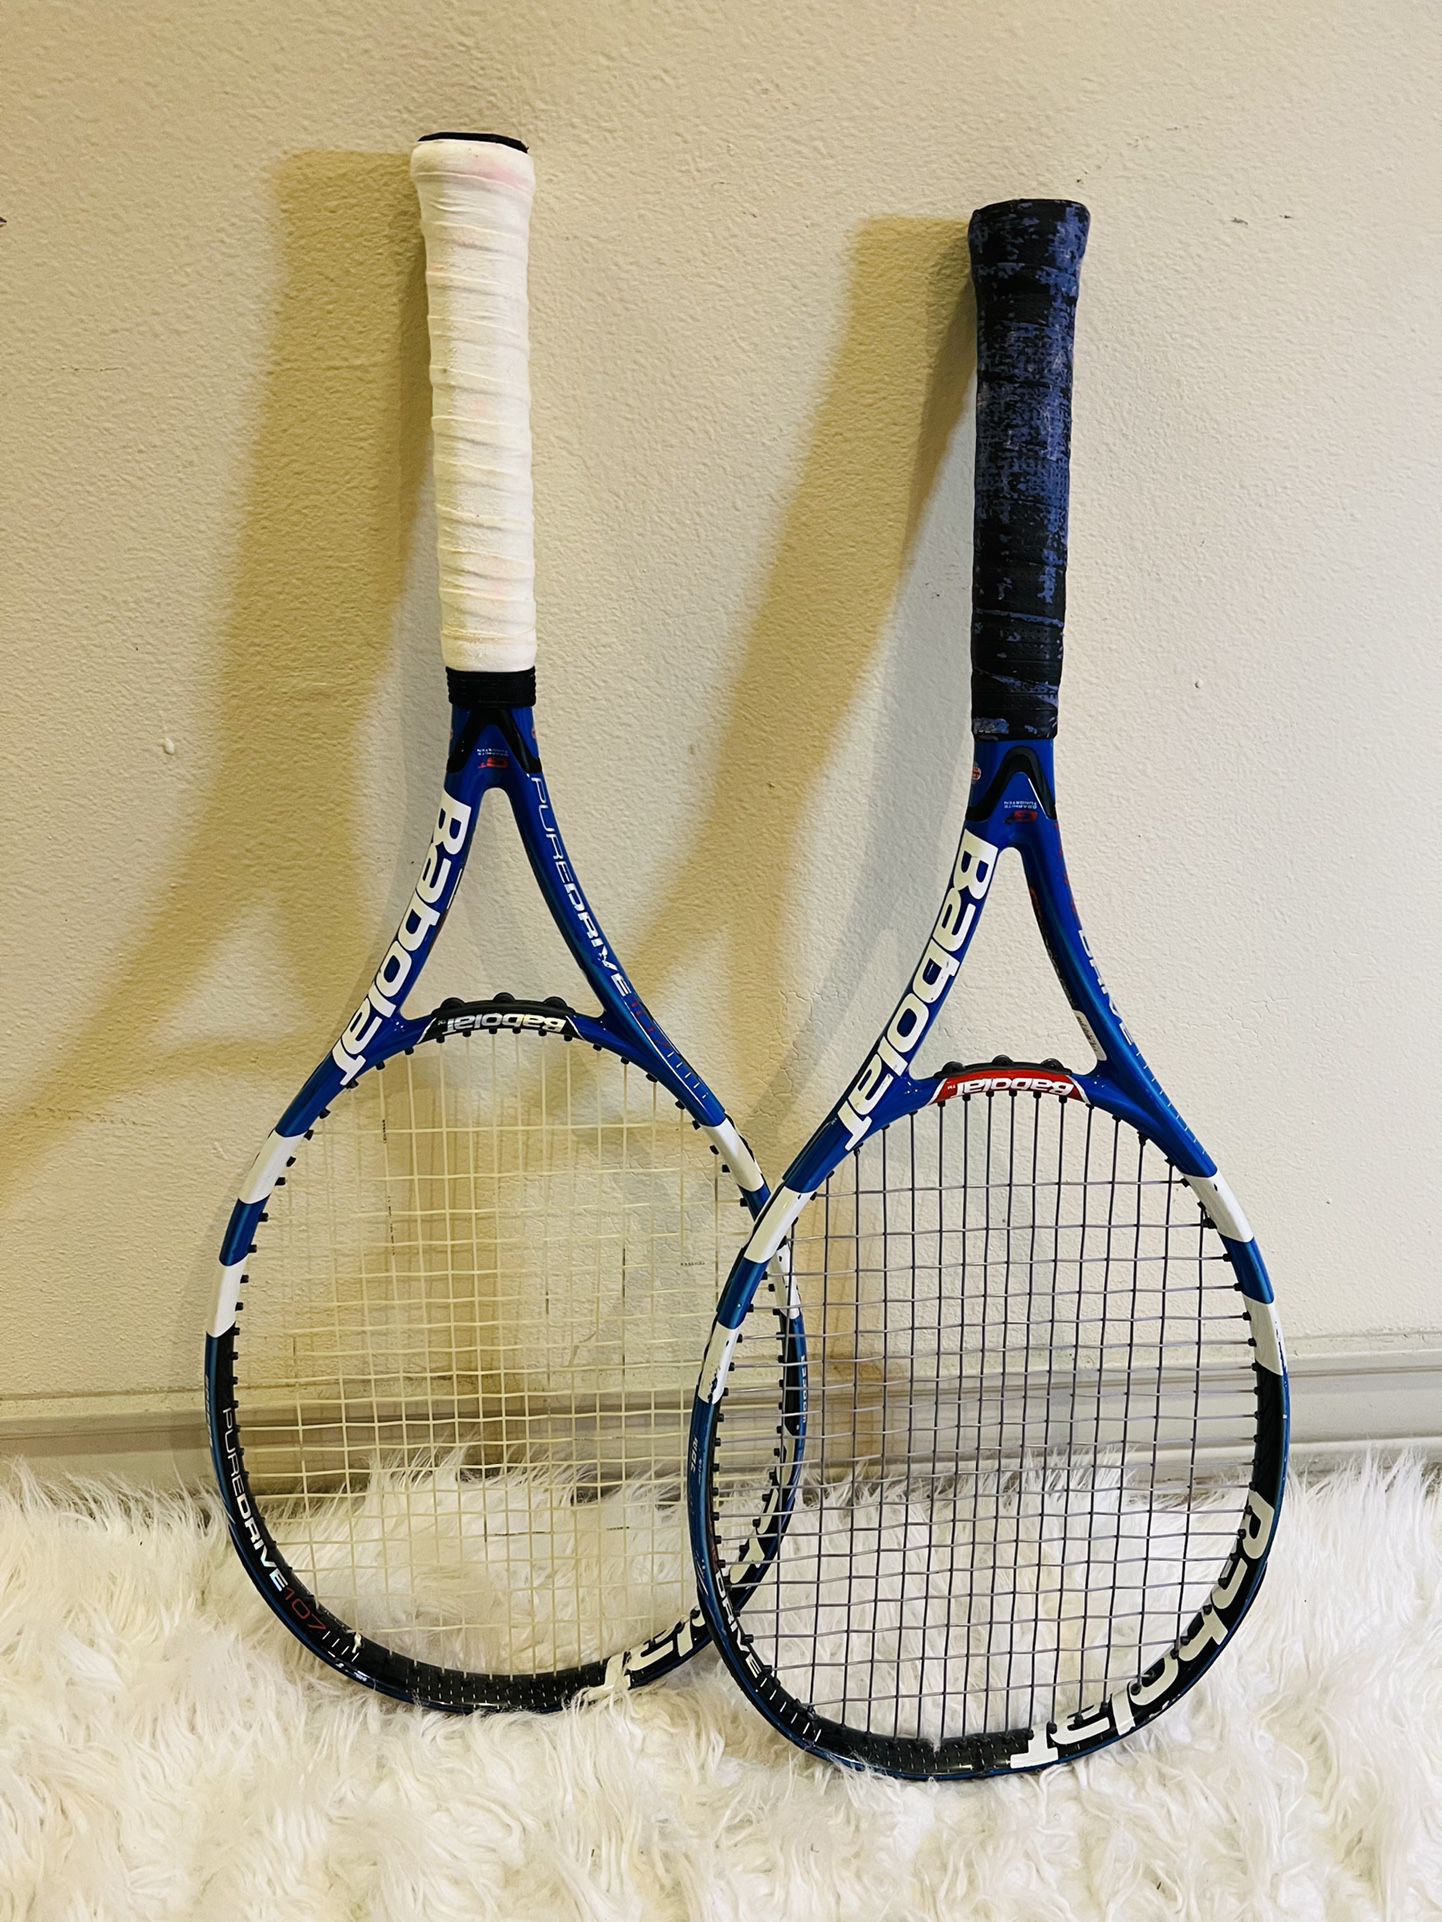 Summer Assorted Tennis Rackets Sale